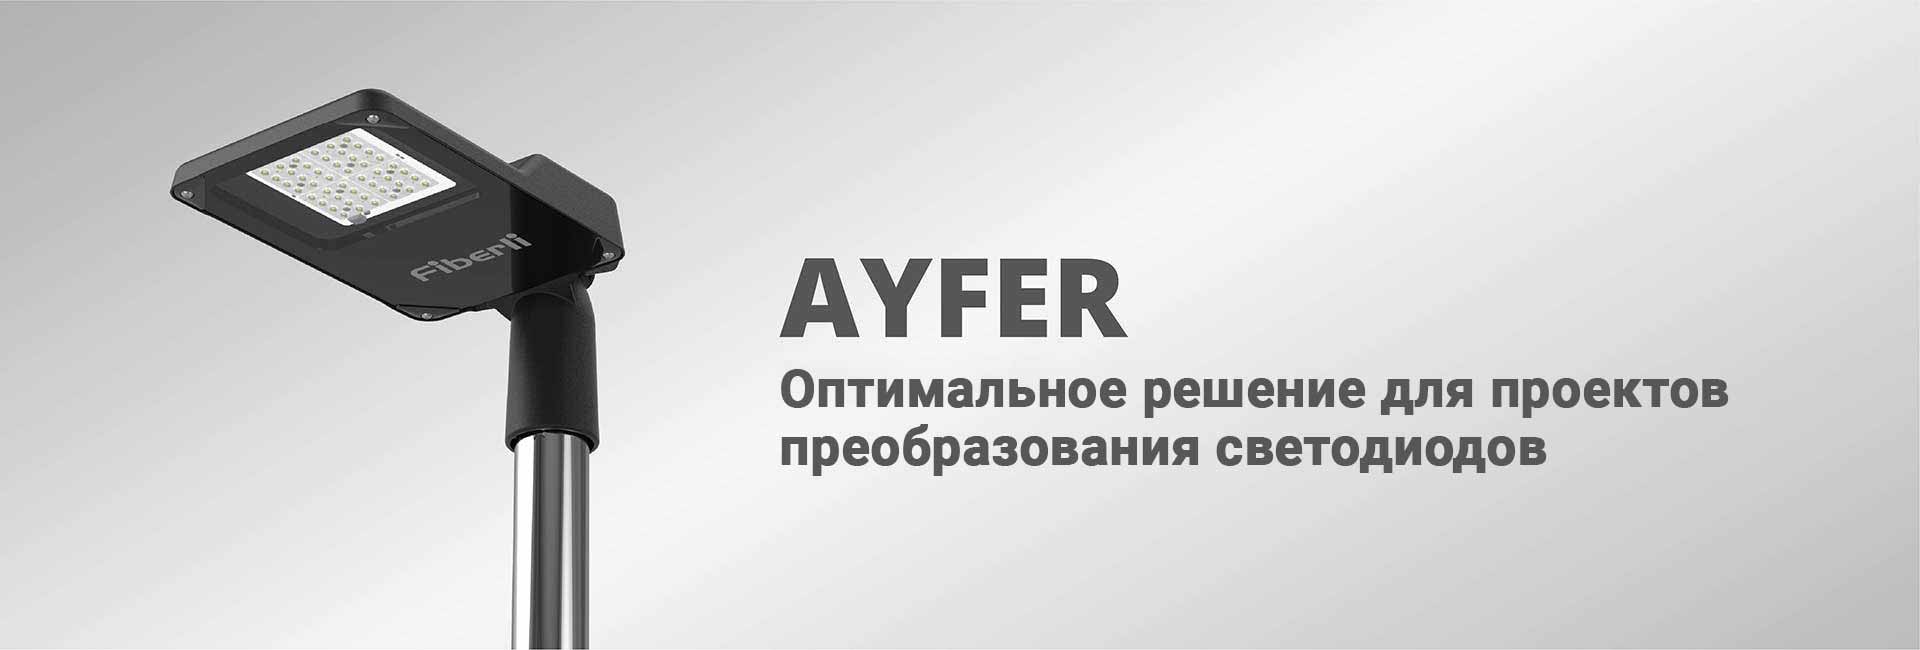 Ayfer